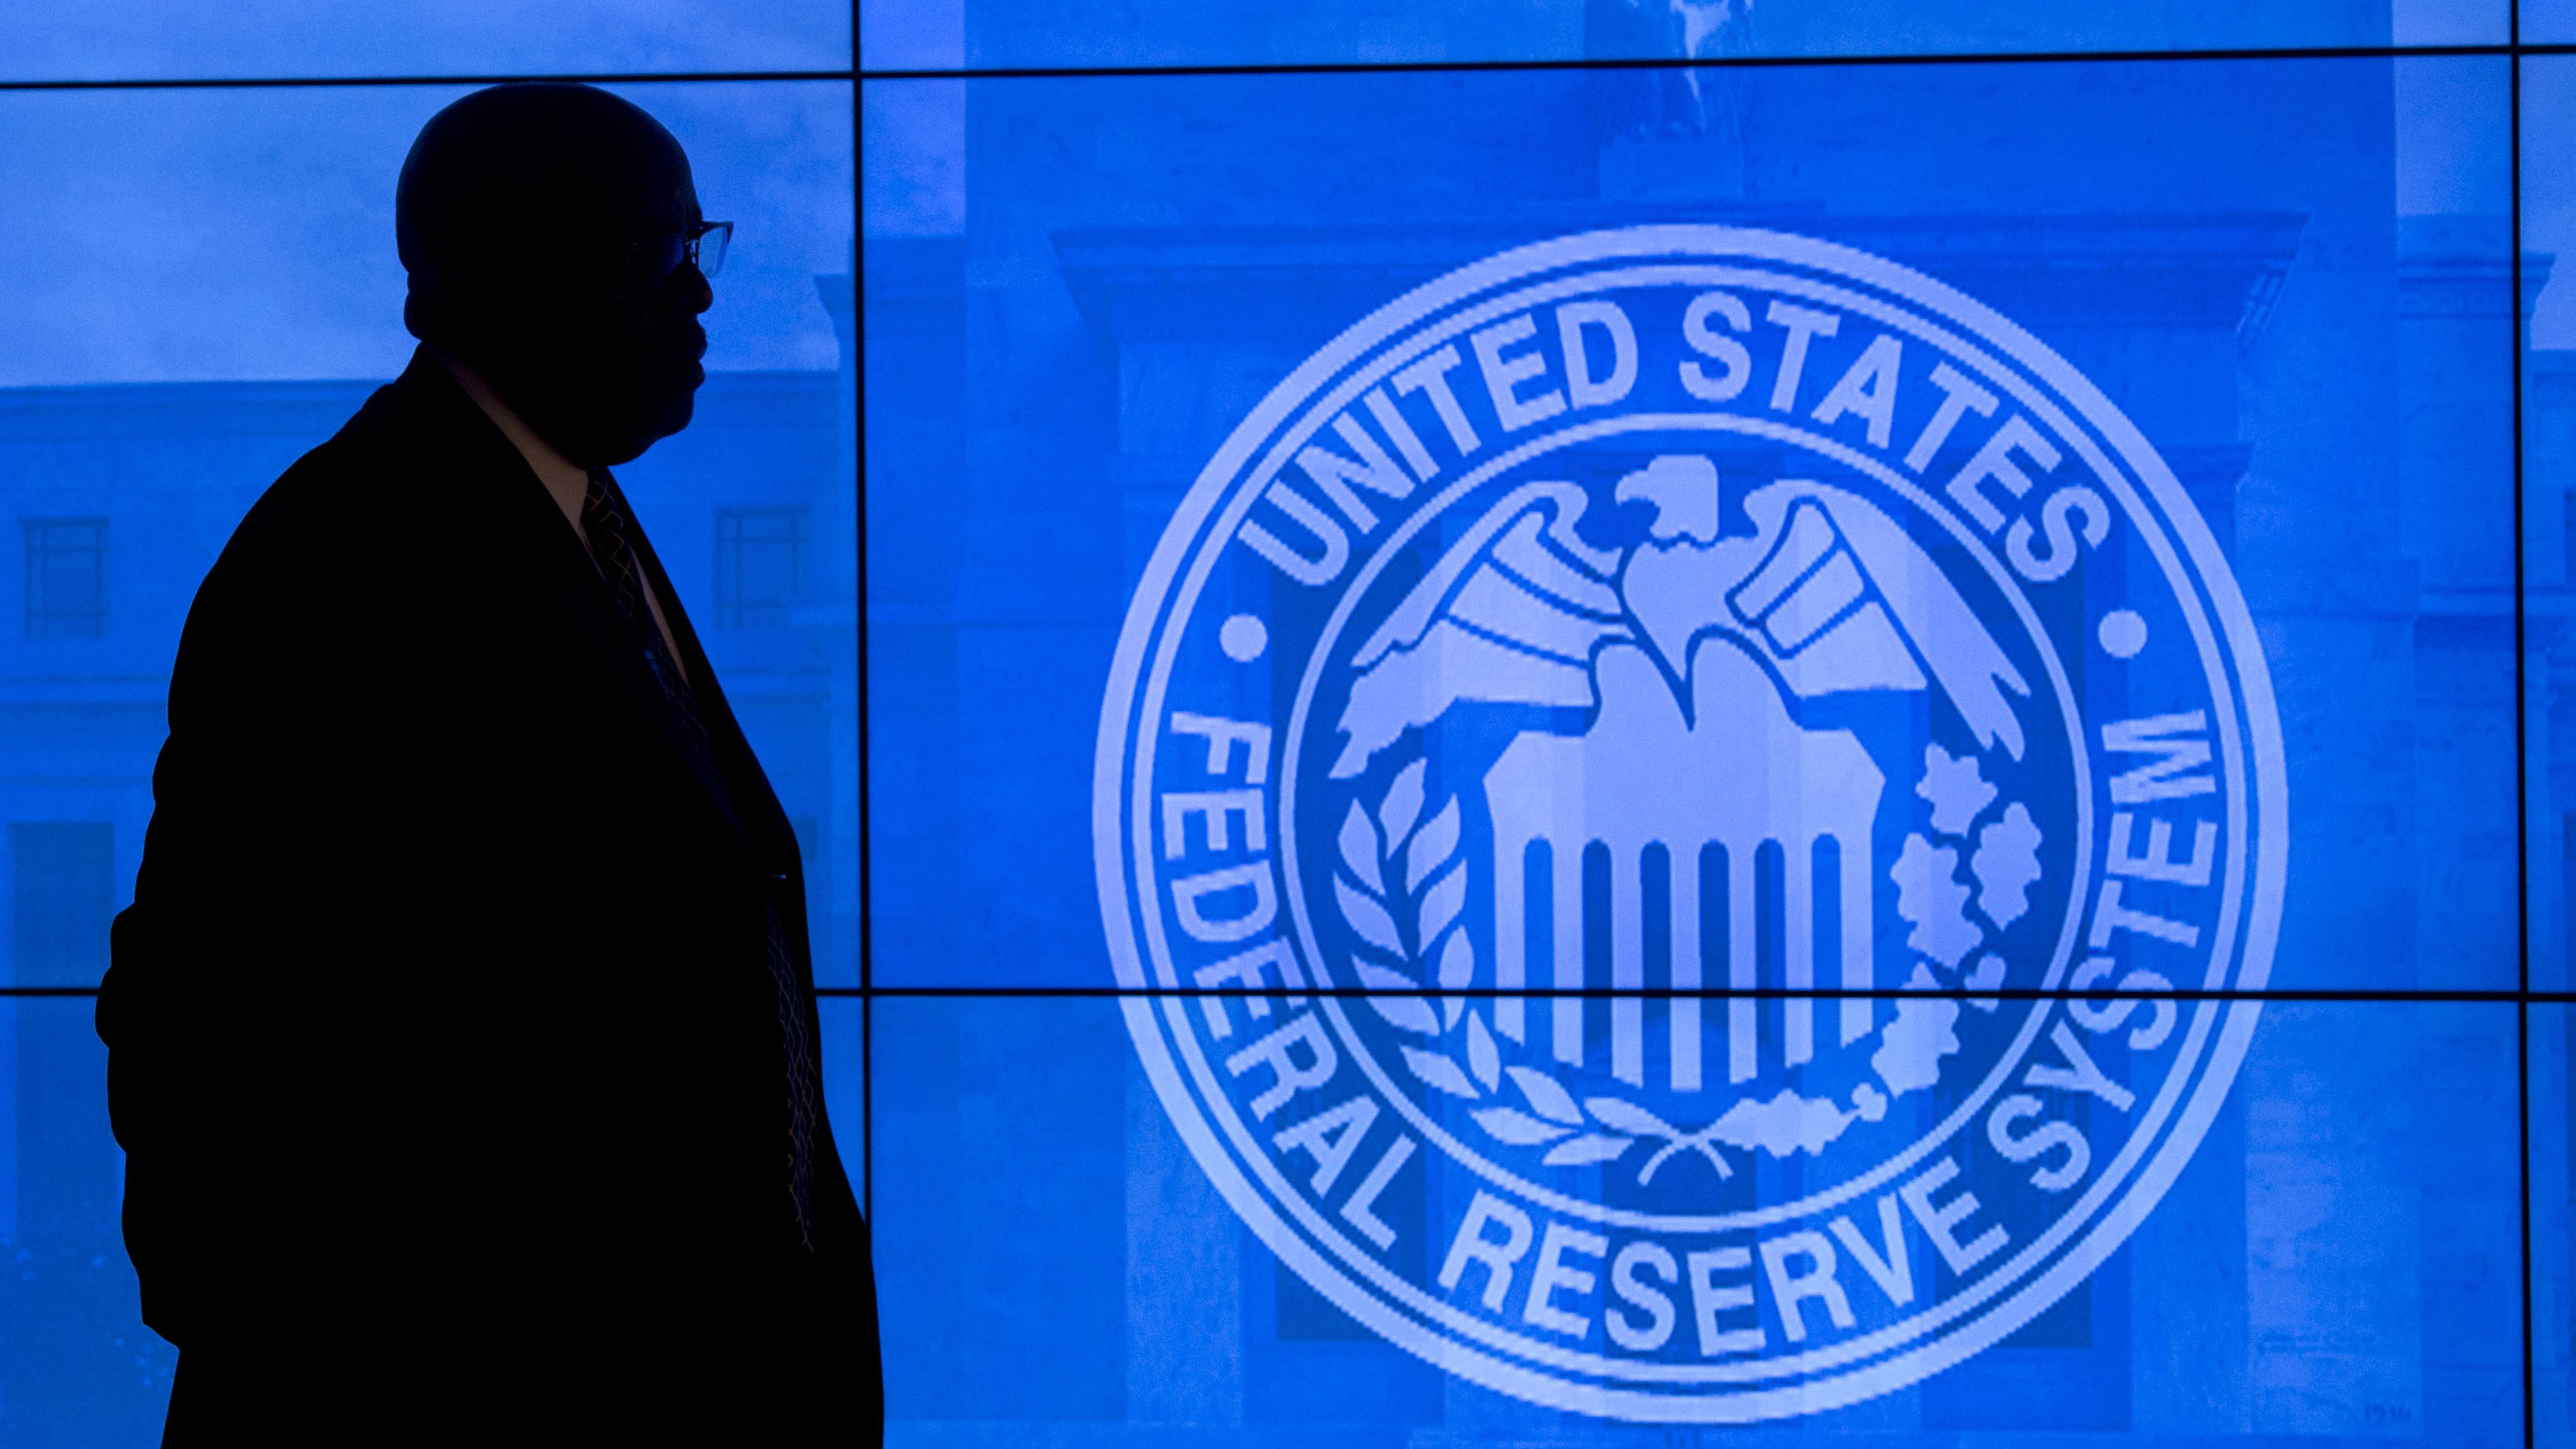 ФРС США логотип